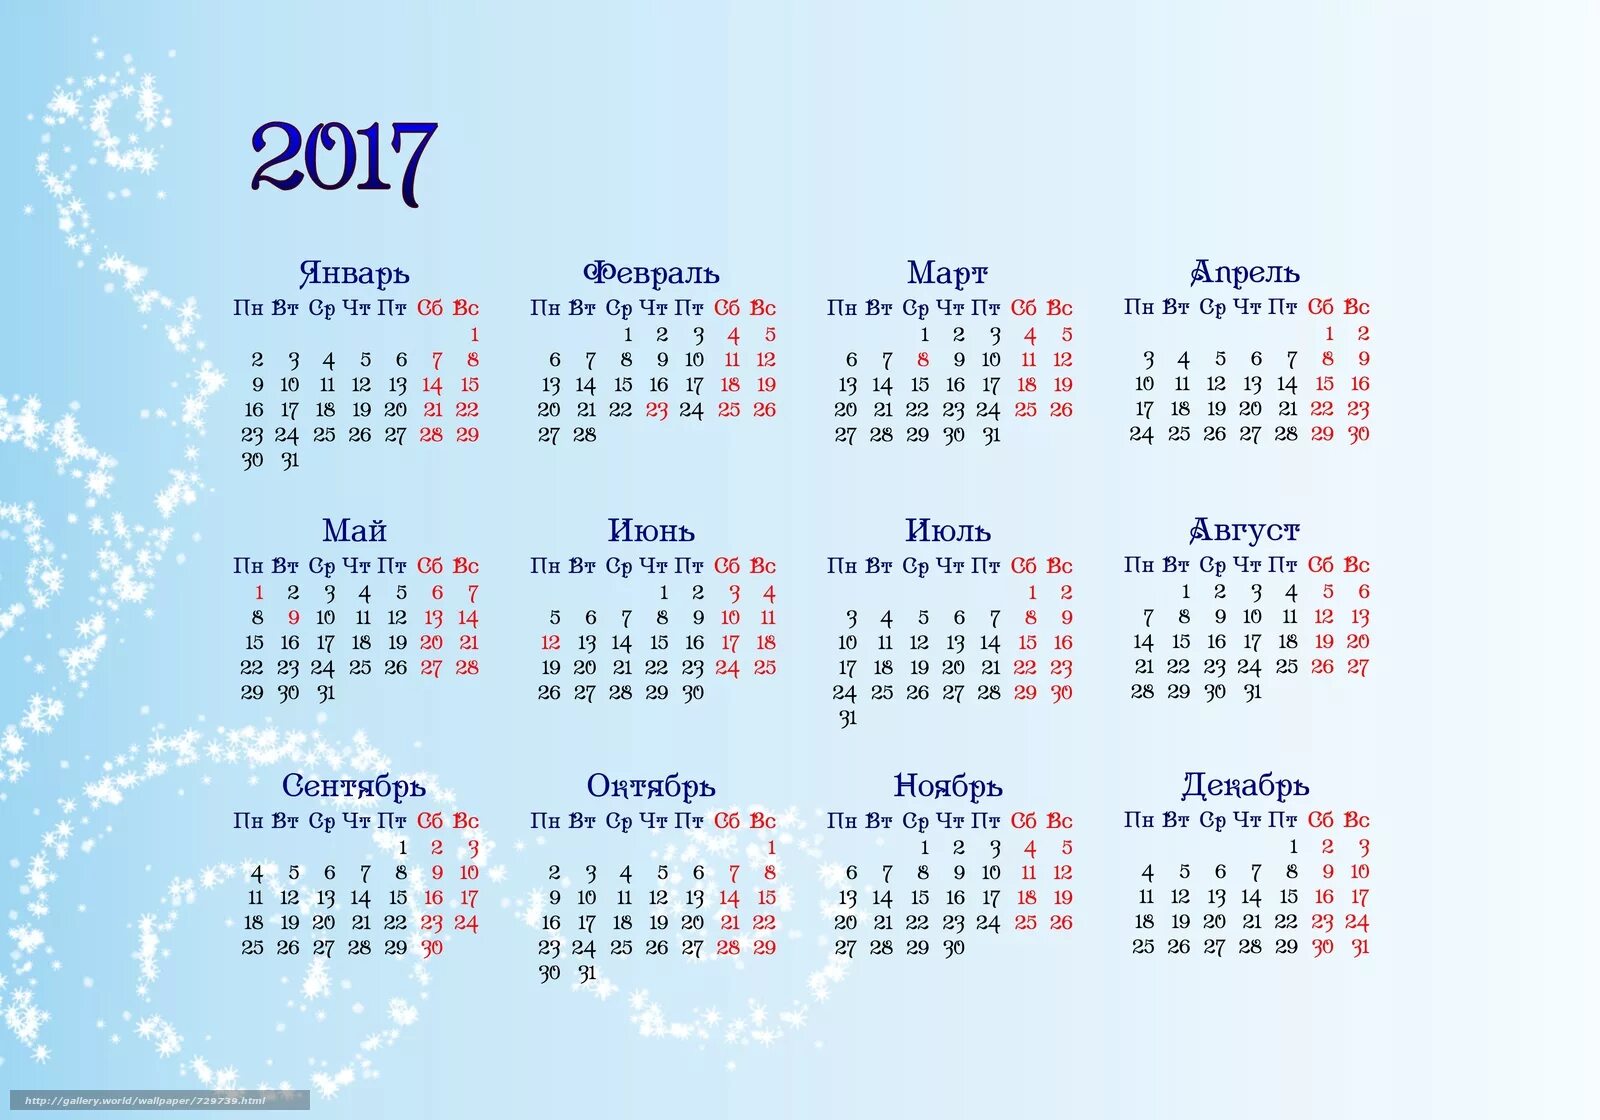 Календарь 2017 года. Календарь 2017г. Календарь 2017 года по месяцам. Календарь 2017 года маленький. 2 декабря 2017 года